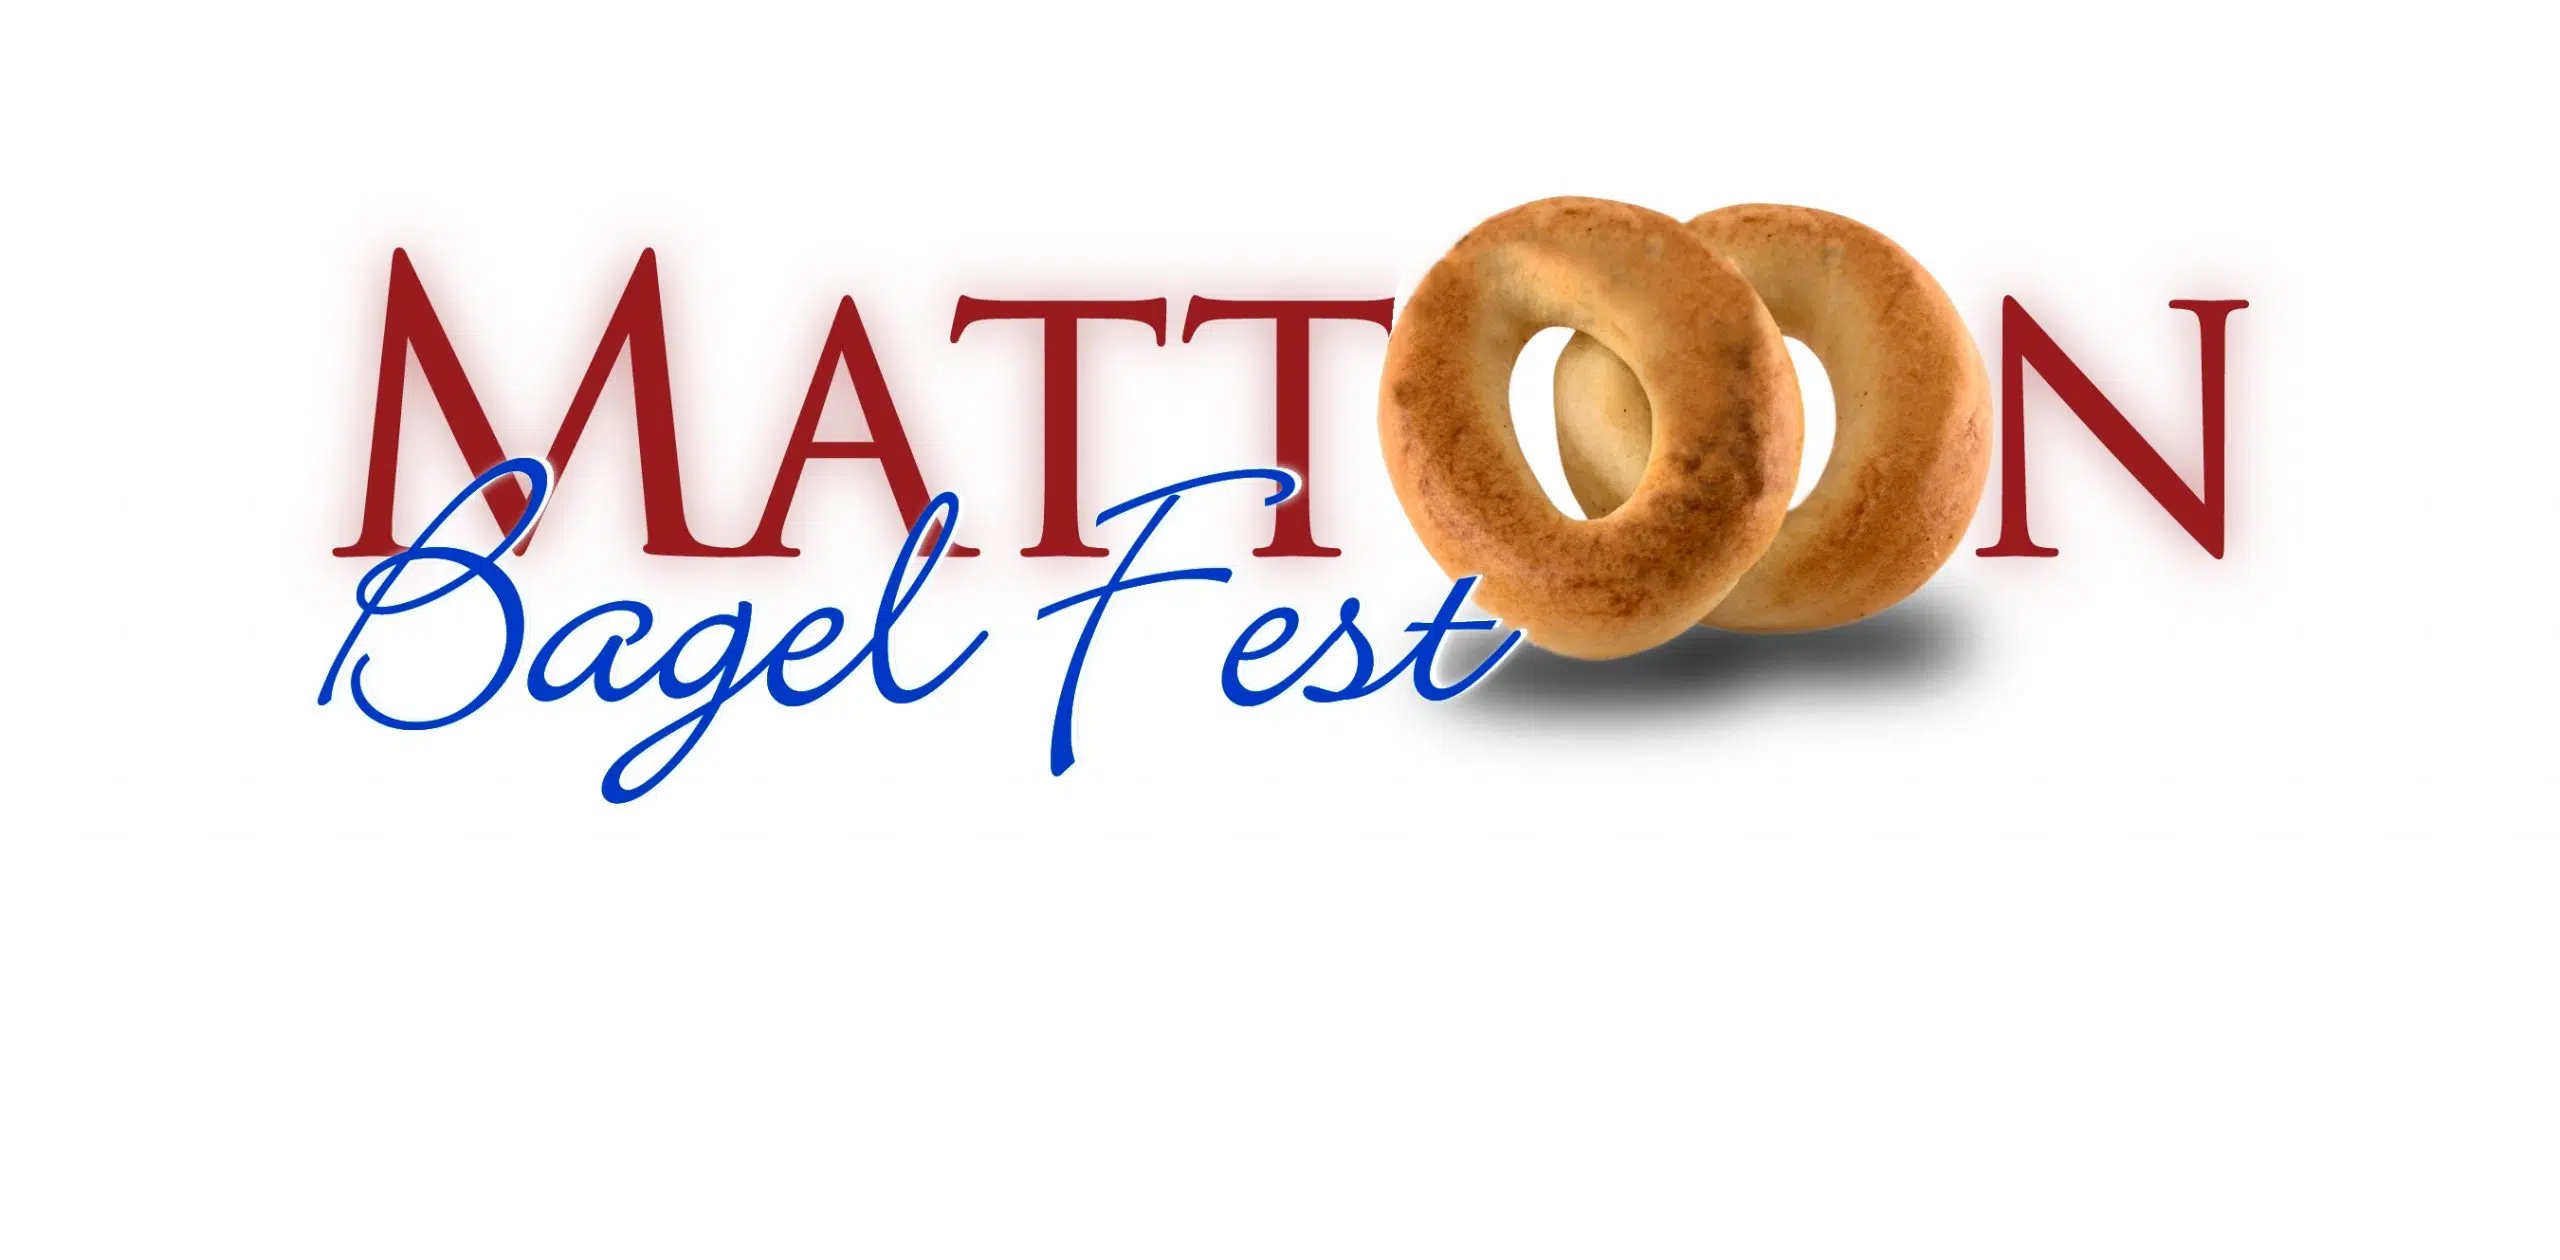 Mattoon Bagelfest Kickoff